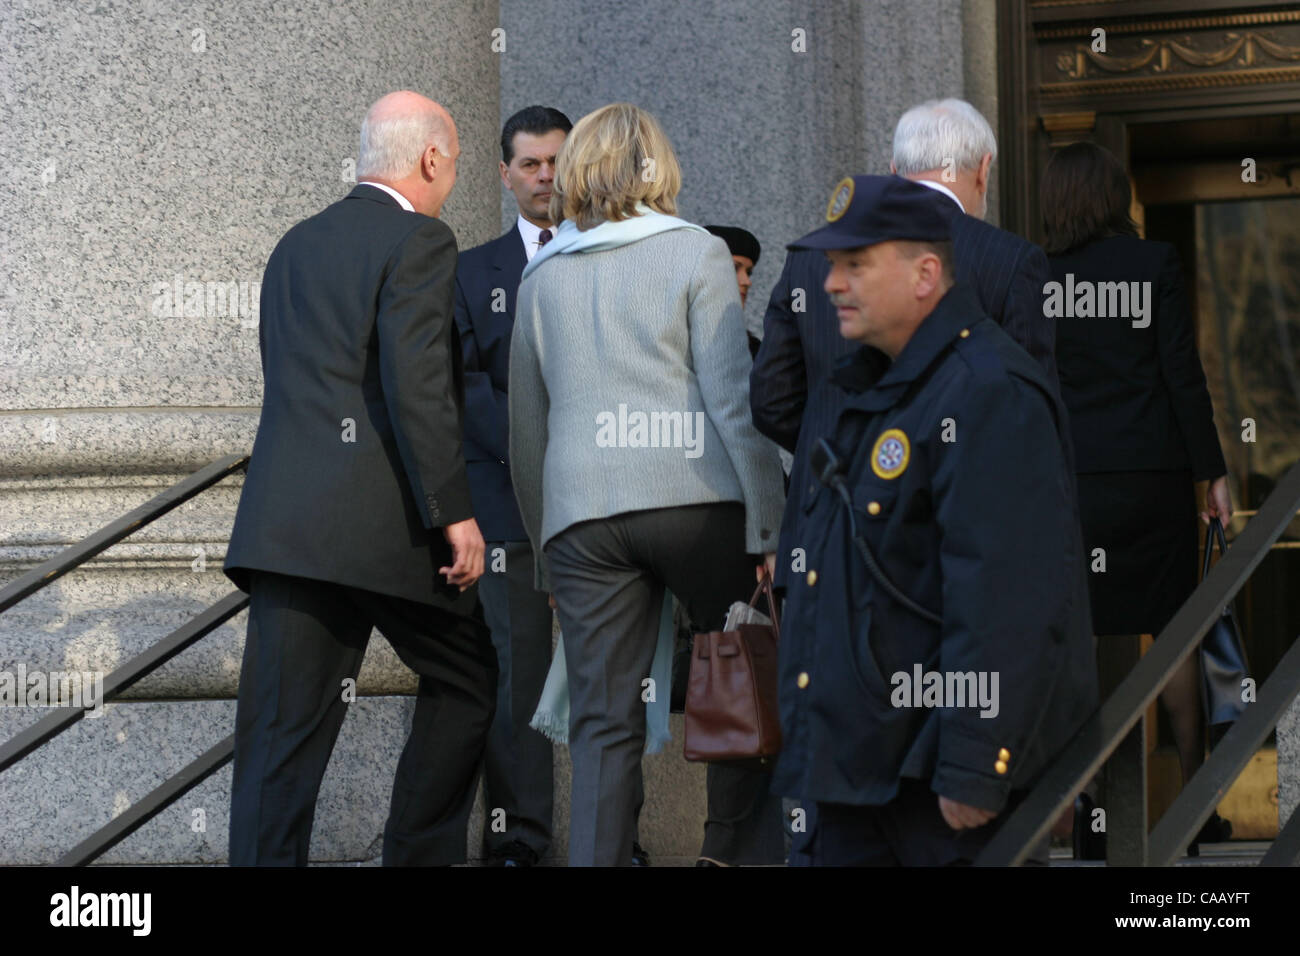 Mar 01, 2004 ; Manhattan, NY, USA ; Martha Stewart arrivant à la cour fédérale de Manhattan. L'accusation de fraude en valeurs mobilières contre elle ont été jetés. Banque D'Images